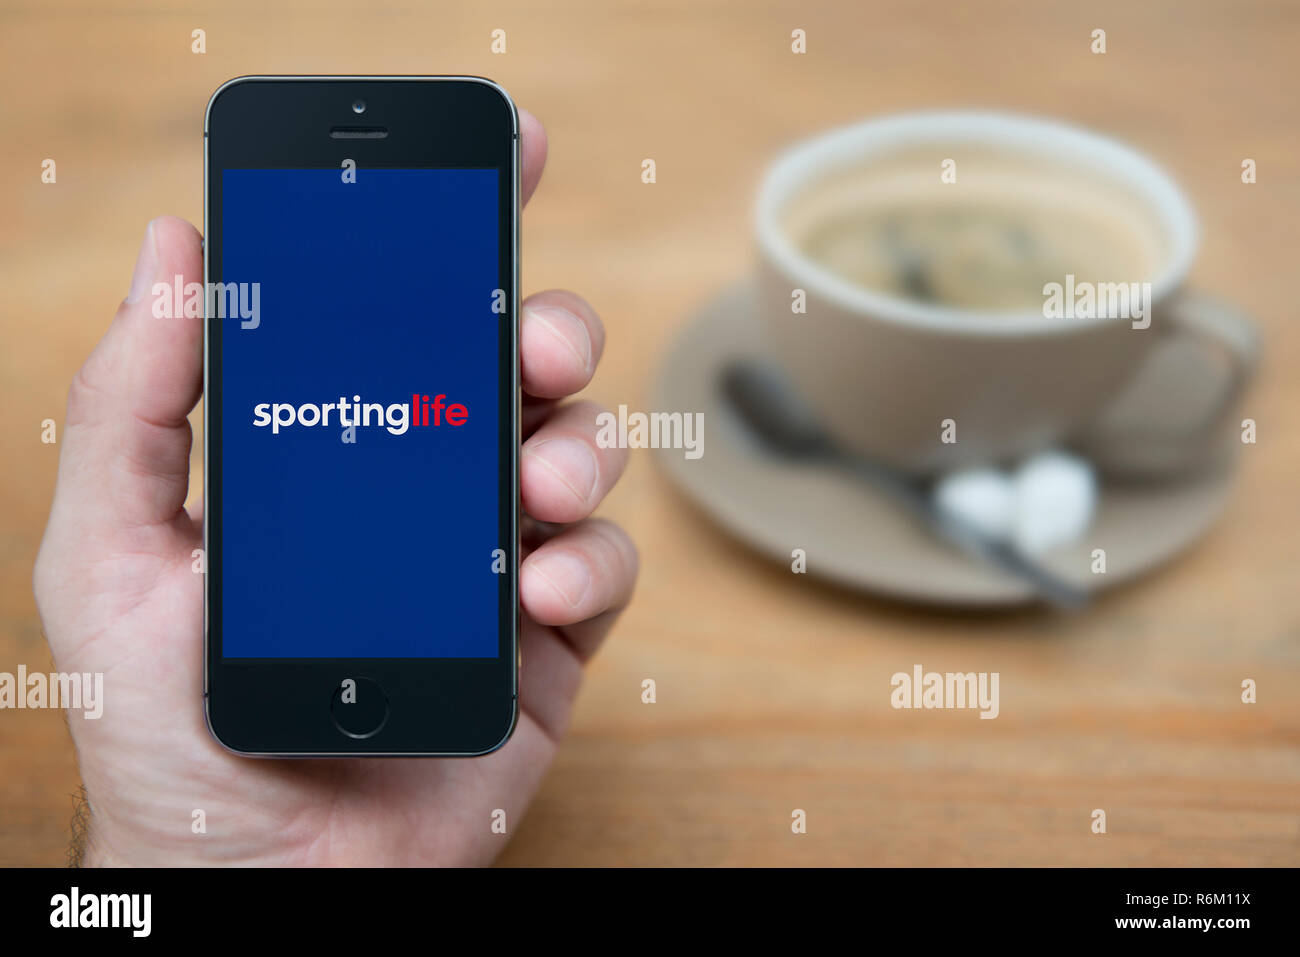 Ein Mann schaut auf seinem iPhone die zeigt die Sporting Life Logo (nur redaktionelle Nutzung). Stockfoto